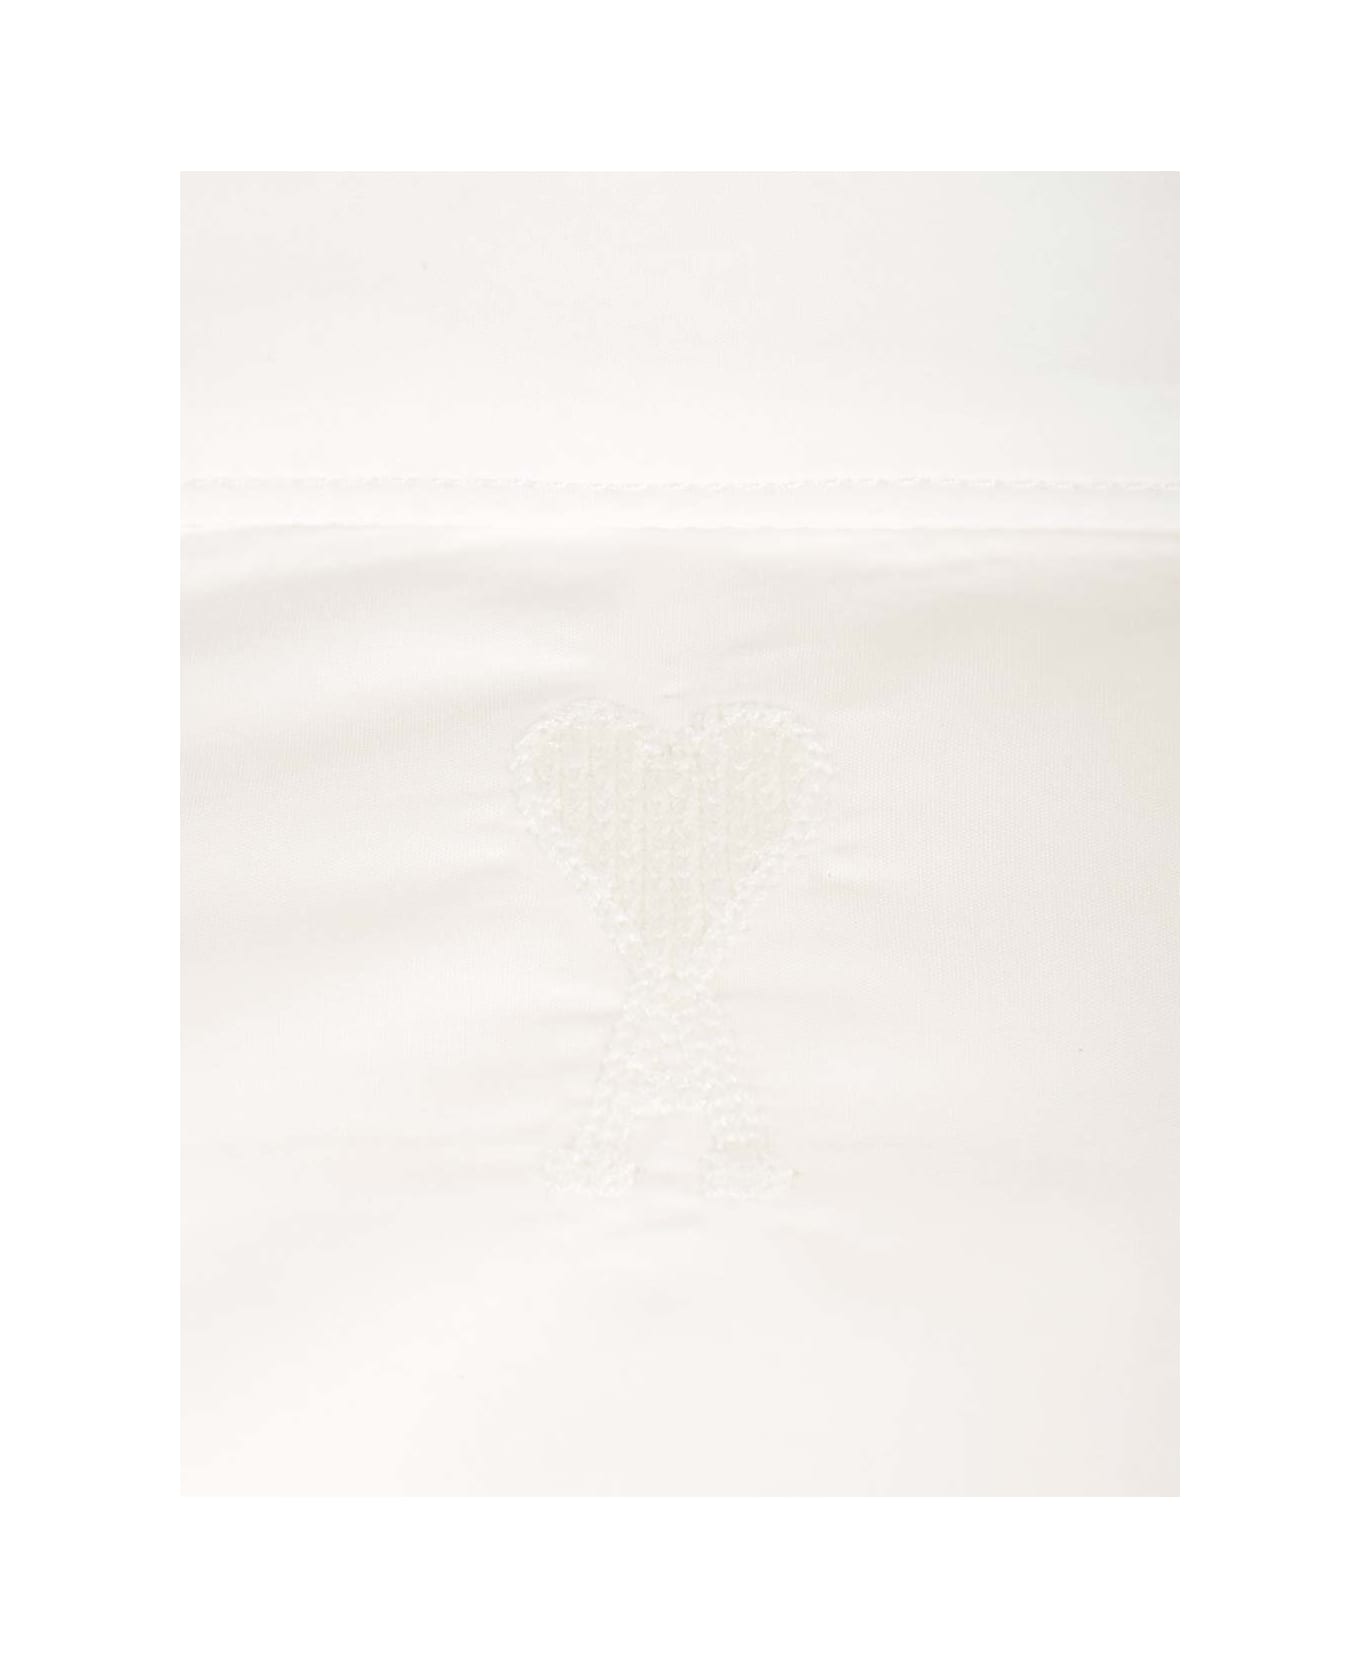 Ami Alexandre Mattiussi White Cotton Shirt - WHITE